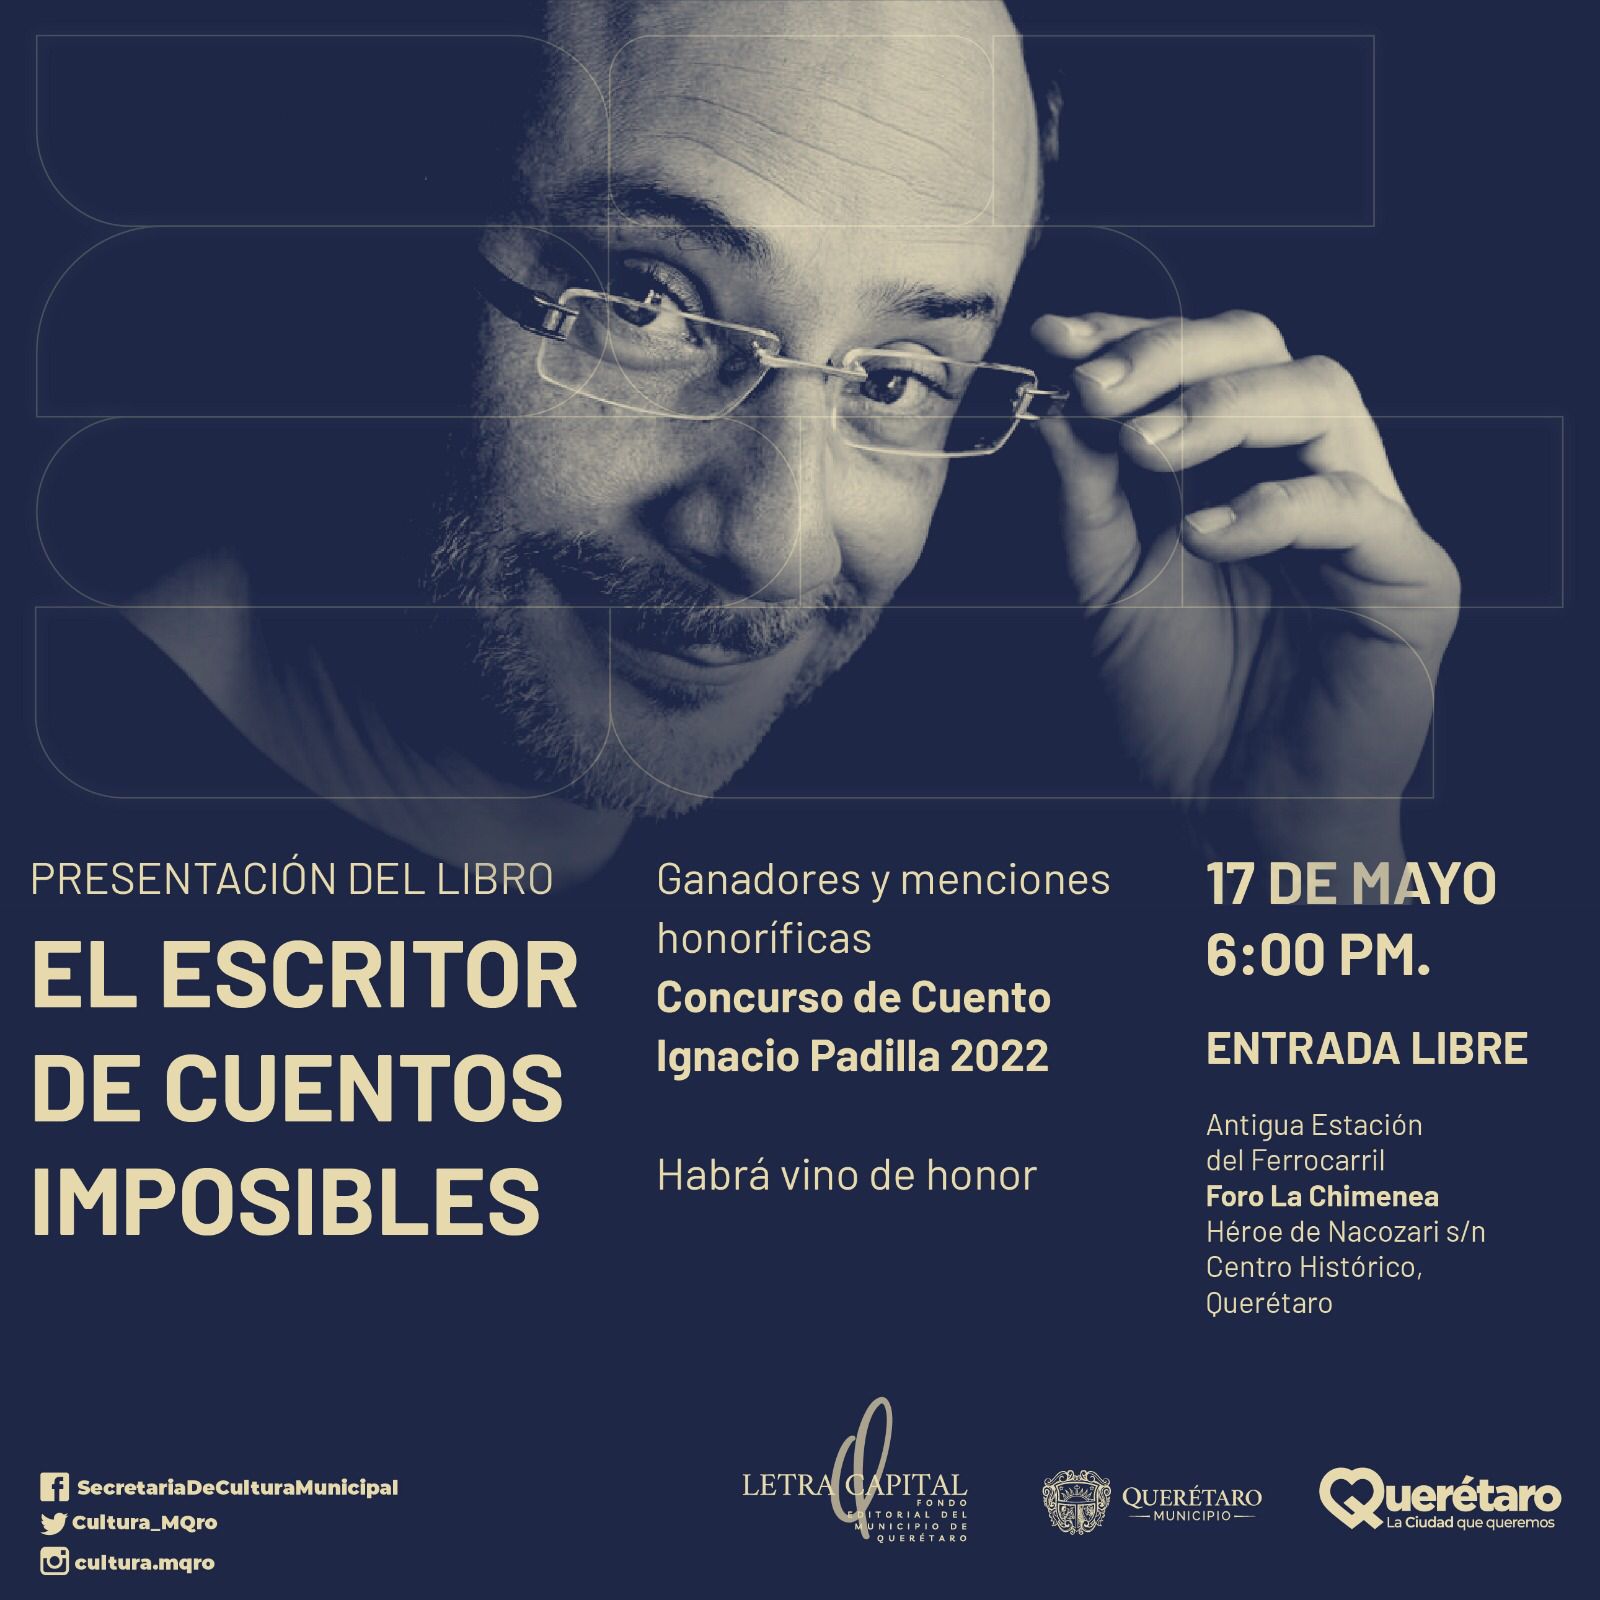 Lista la presentación del libro “El escritor de cuentos imposibles” del concurso de cuento Ignacio Padilla edición 2022